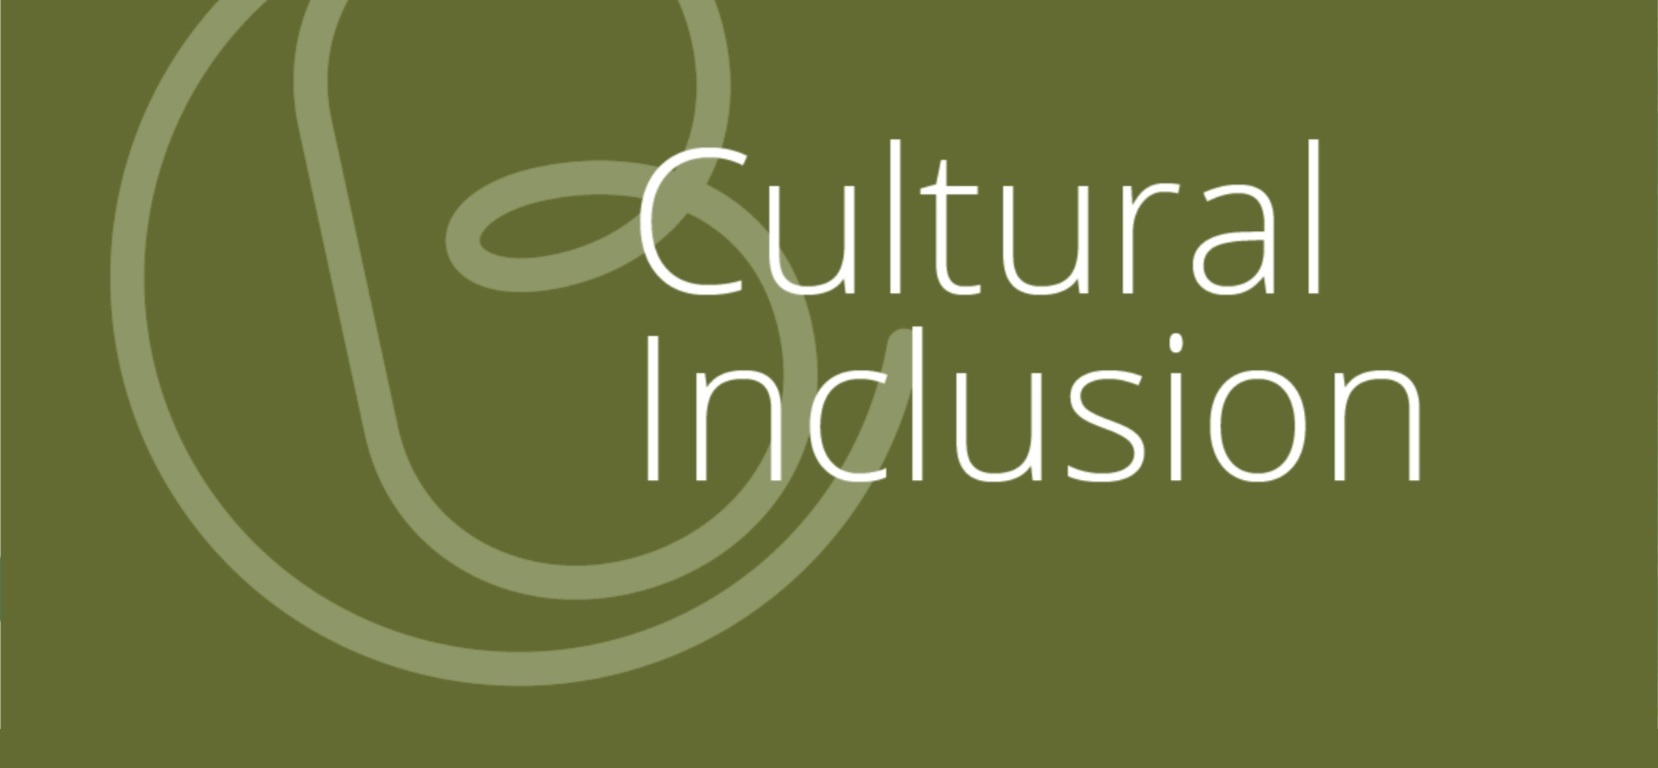 Culturalbase